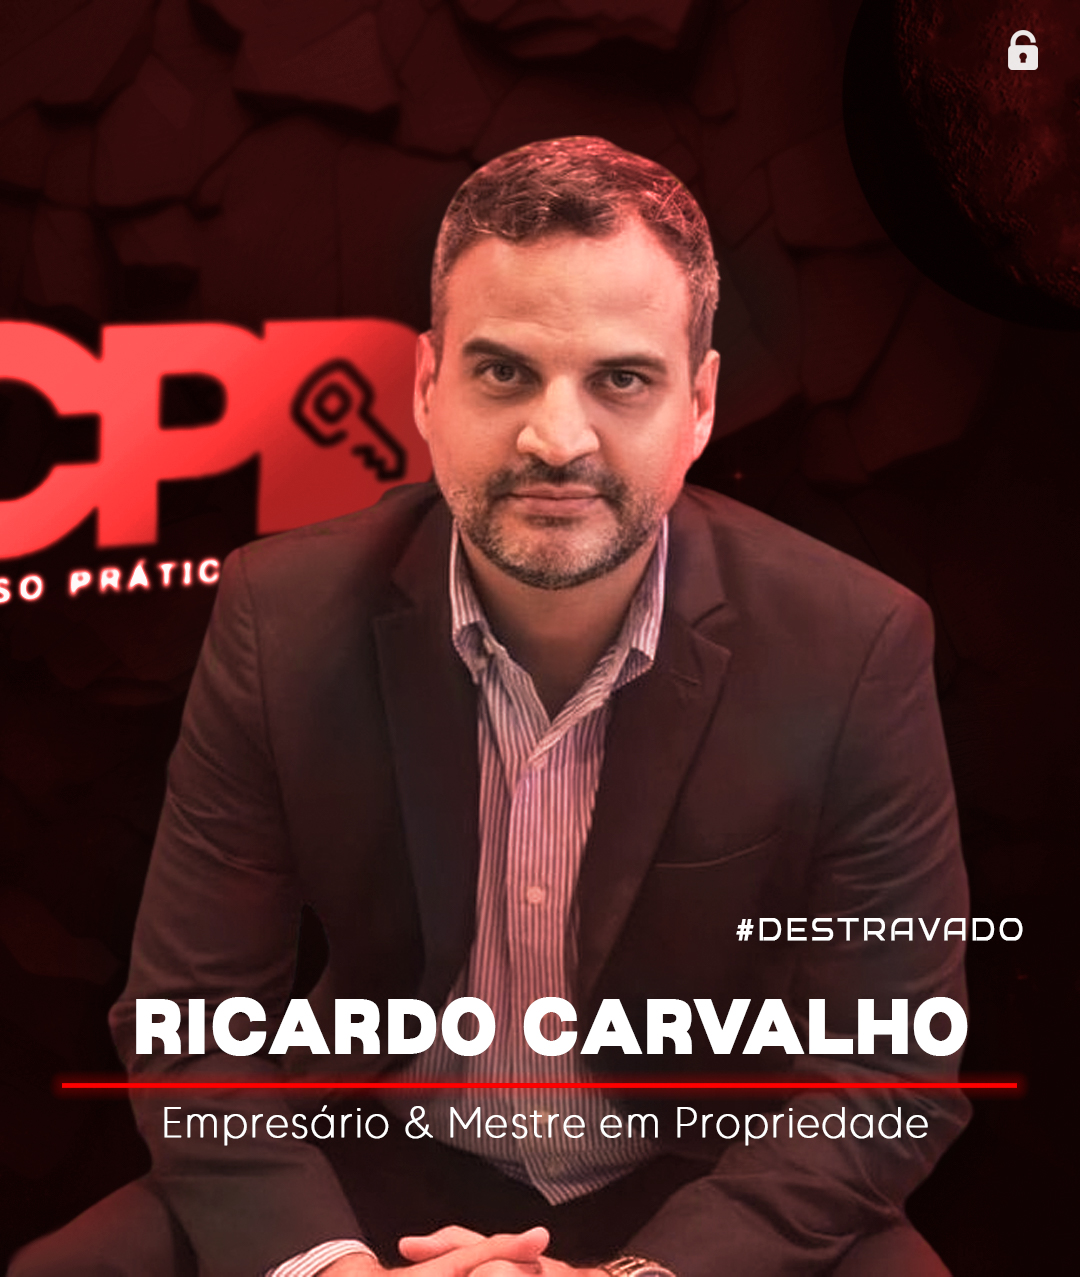 RICARDO CARVALHO